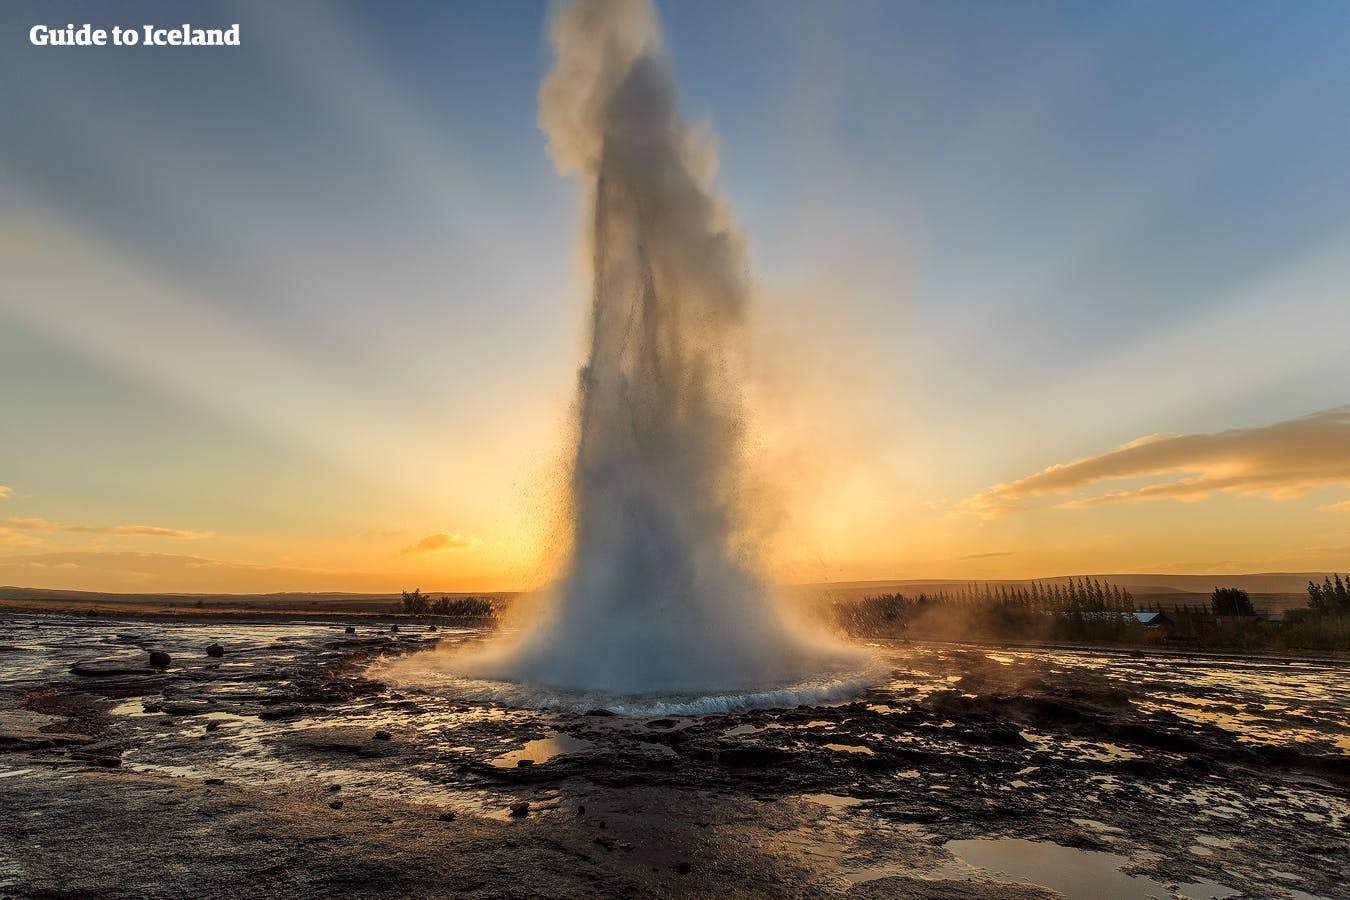 冰岛黄金圈的史托克间歇泉在夏季午夜阳光下壮丽喷发